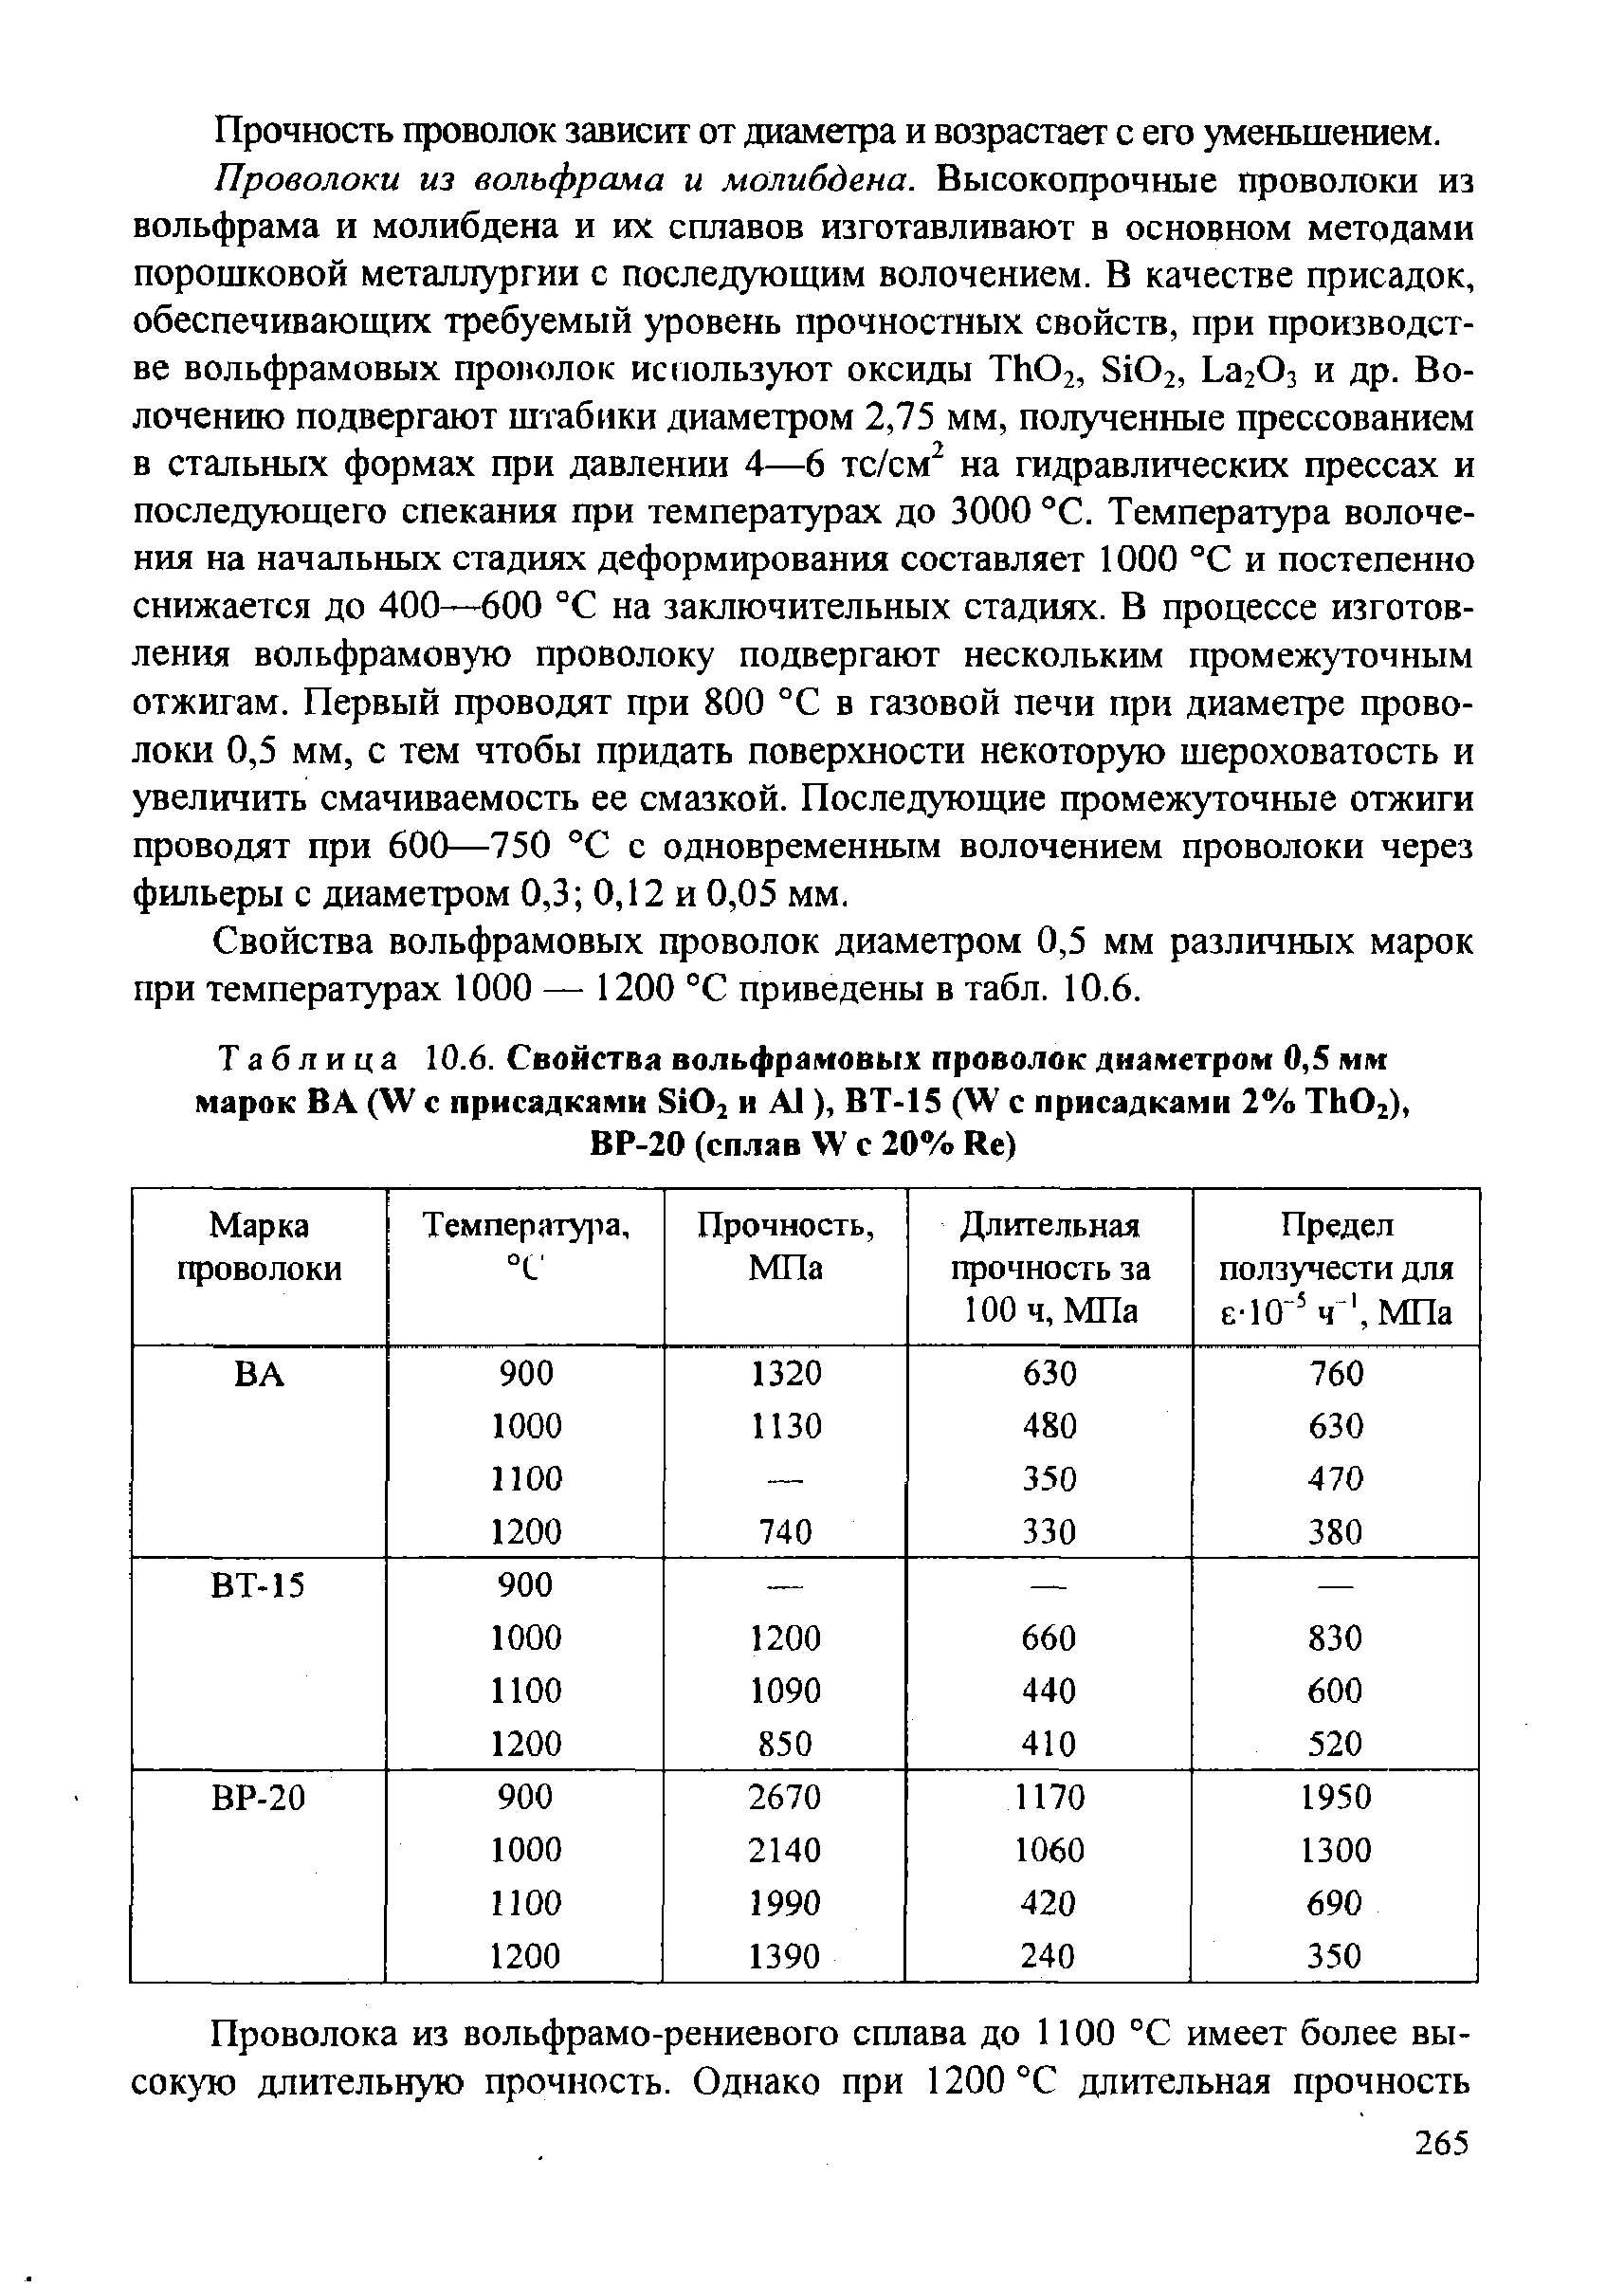 Таблица 10.6. Свойства вольфрамовых проволок диаметром 0,5 мм марок ВЛ (ЗУ с присадками 8102 и Л1), ВТ-15 (ЗУ с присадками 2% Т11О2), ВР-20 (сплав ЗУ с 20% Ве)
